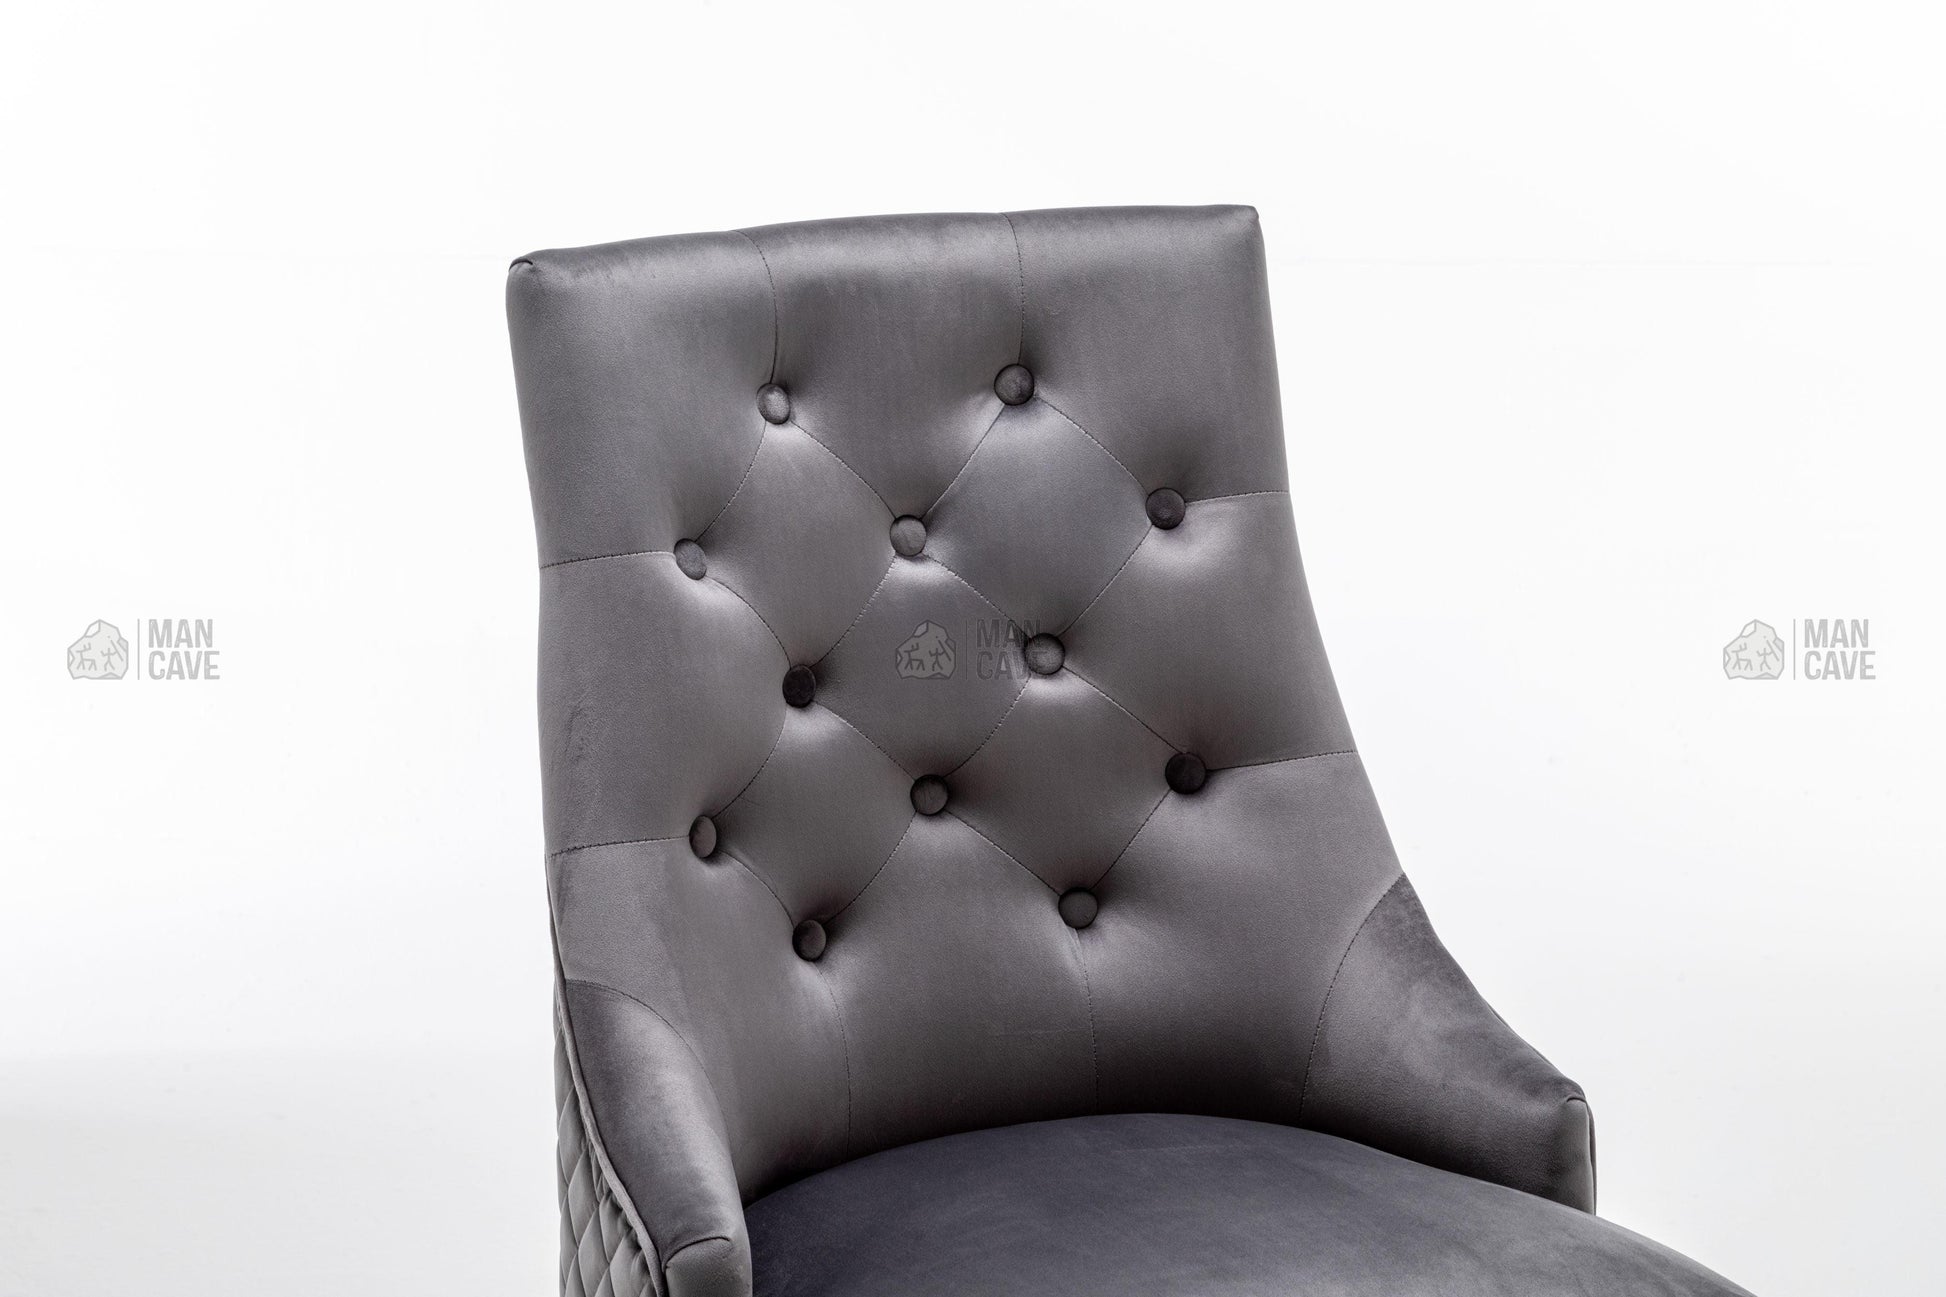 Cambridge Dining Chair - Dark Grey - mancavesuperstore